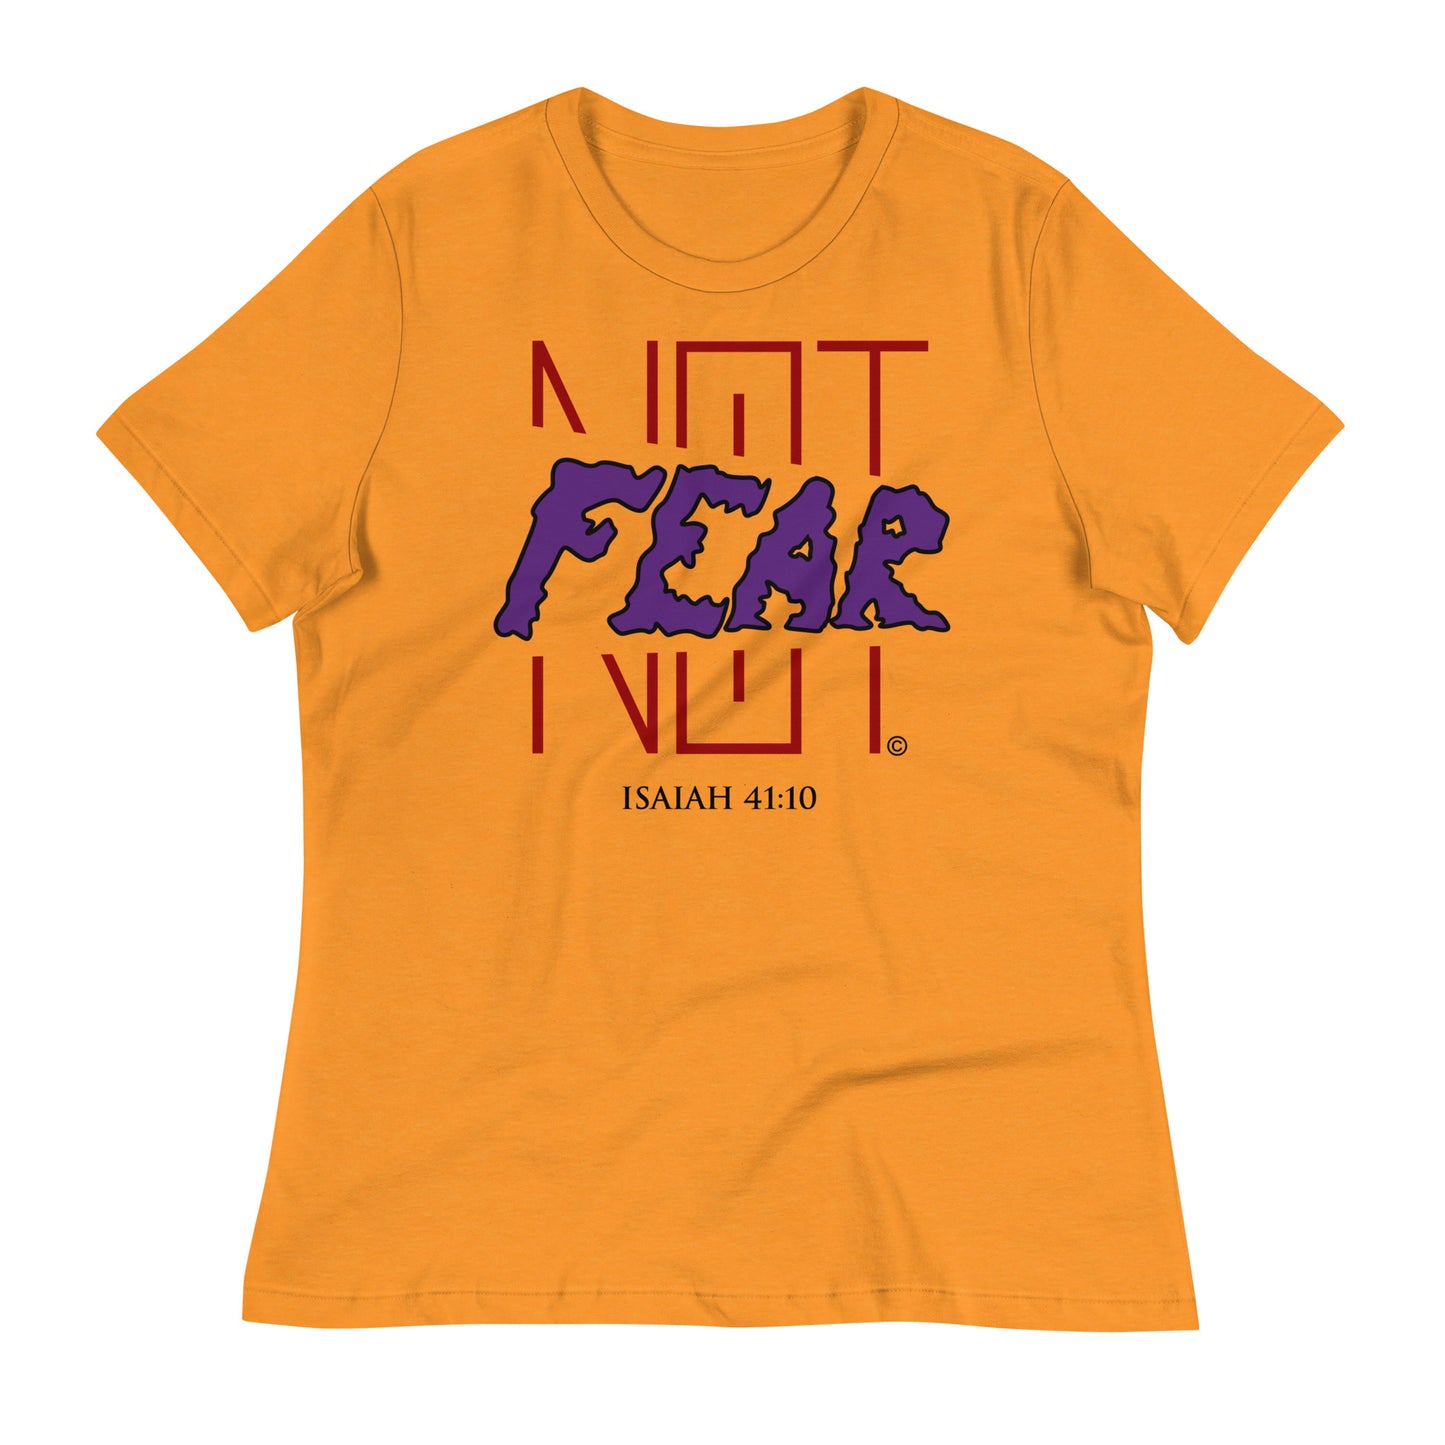 Fear Not Women's Relaxed T-Shirt